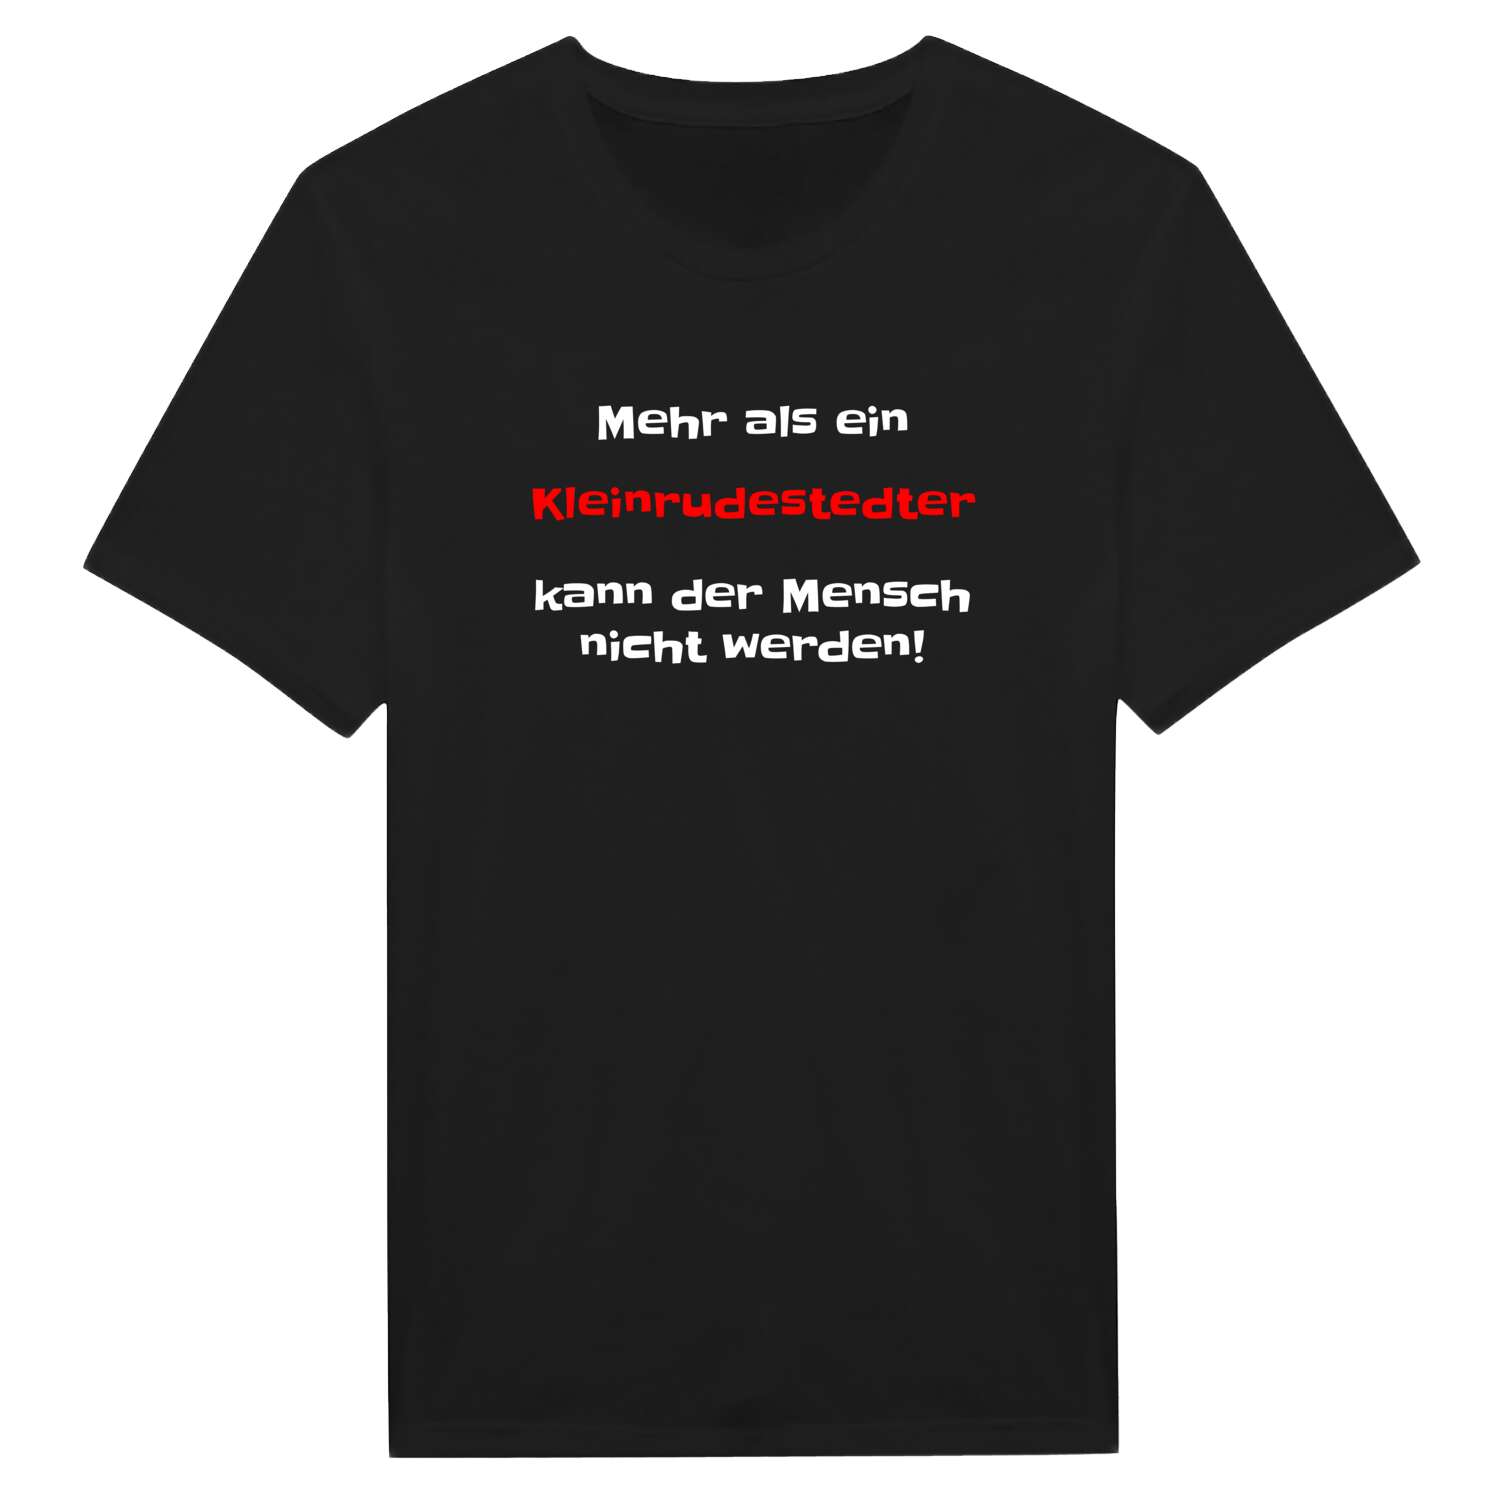 Kleinrudestedt T-Shirt »Mehr als ein«